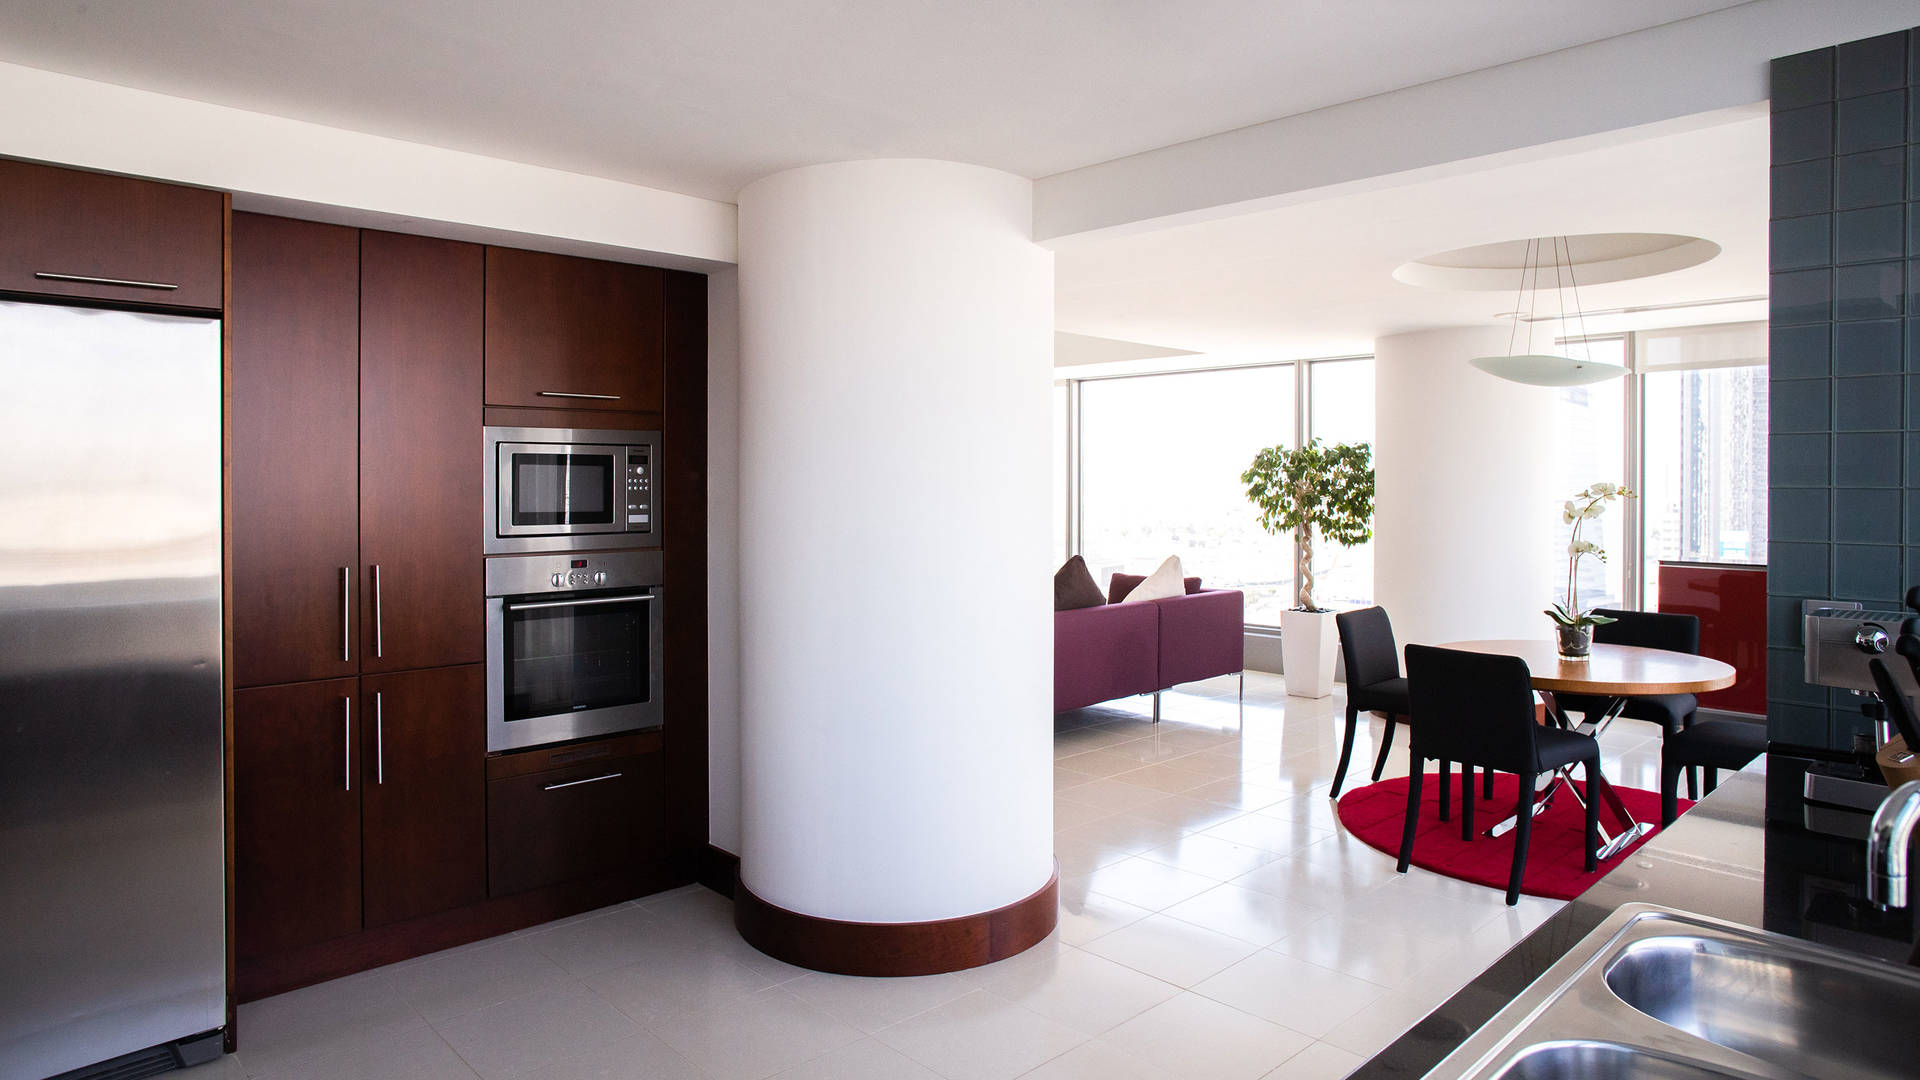 Apartament în World Trade Center, Dubai, Emiratele Arabe Unite, 2 dormitoare, 116 mp nr. 25241 - 6